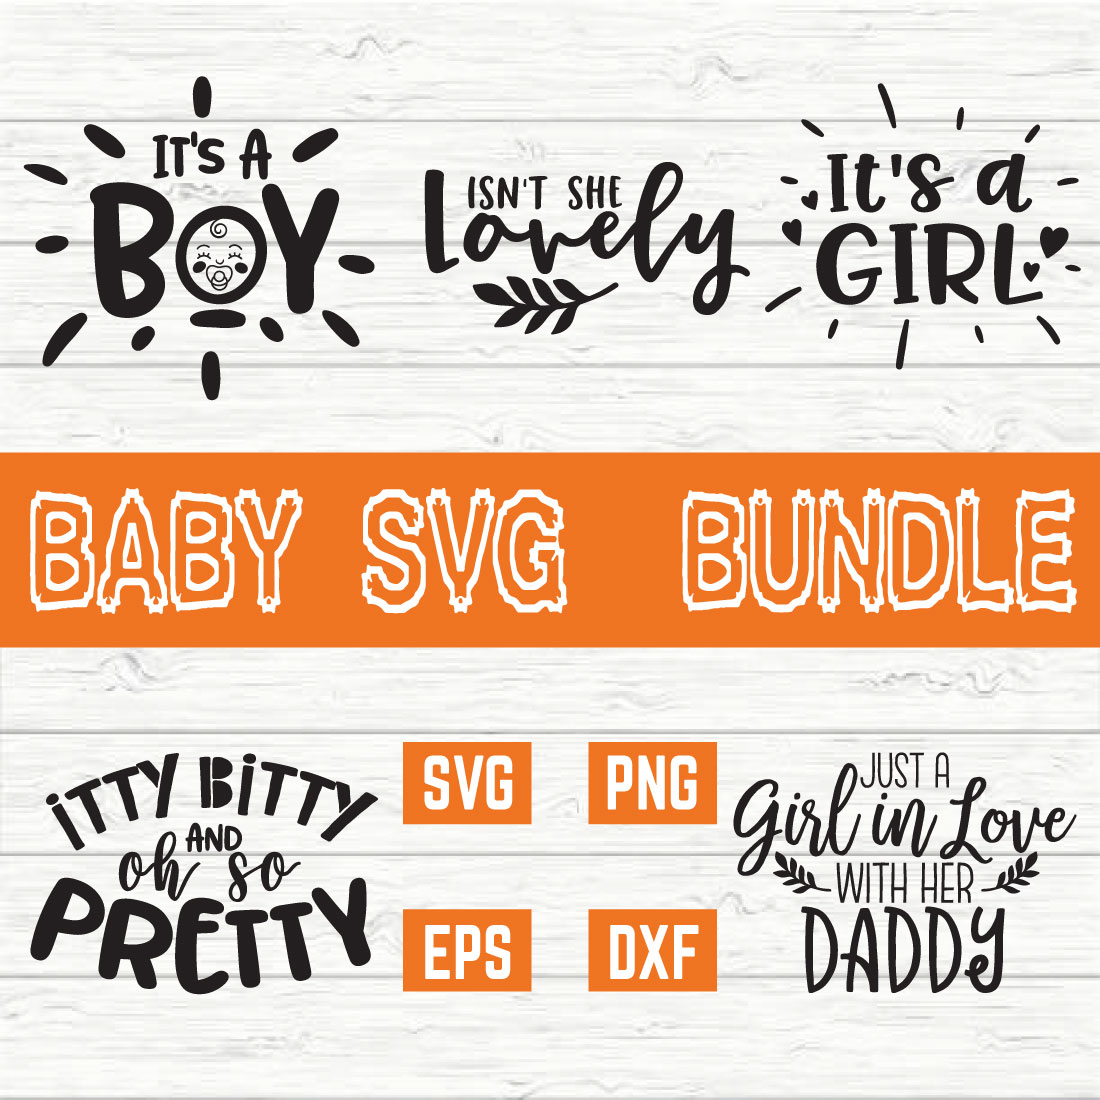 Baby Design Bundle vol 4 preview image.